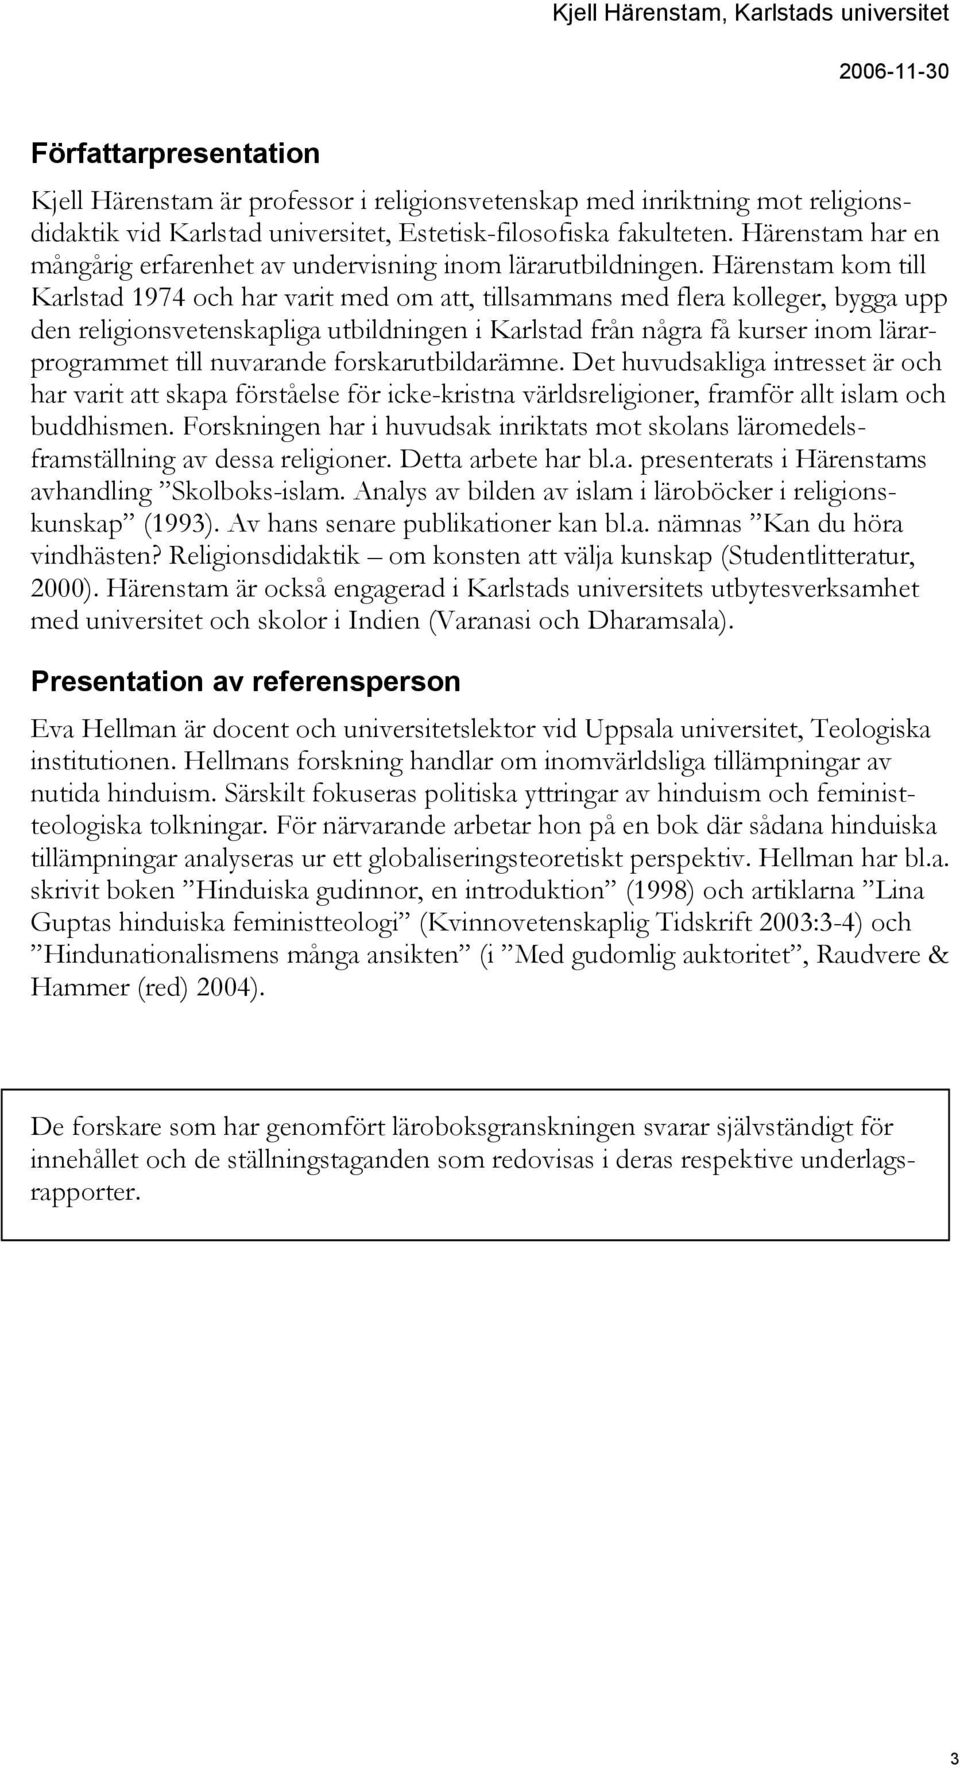 Härenstam kom till Karlstad 1974 och har varit med om att, tillsammans med flera kolleger, bygga upp den religionsvetenskapliga utbildningen i Karlstad från några få kurser inom lärarprogrammet till